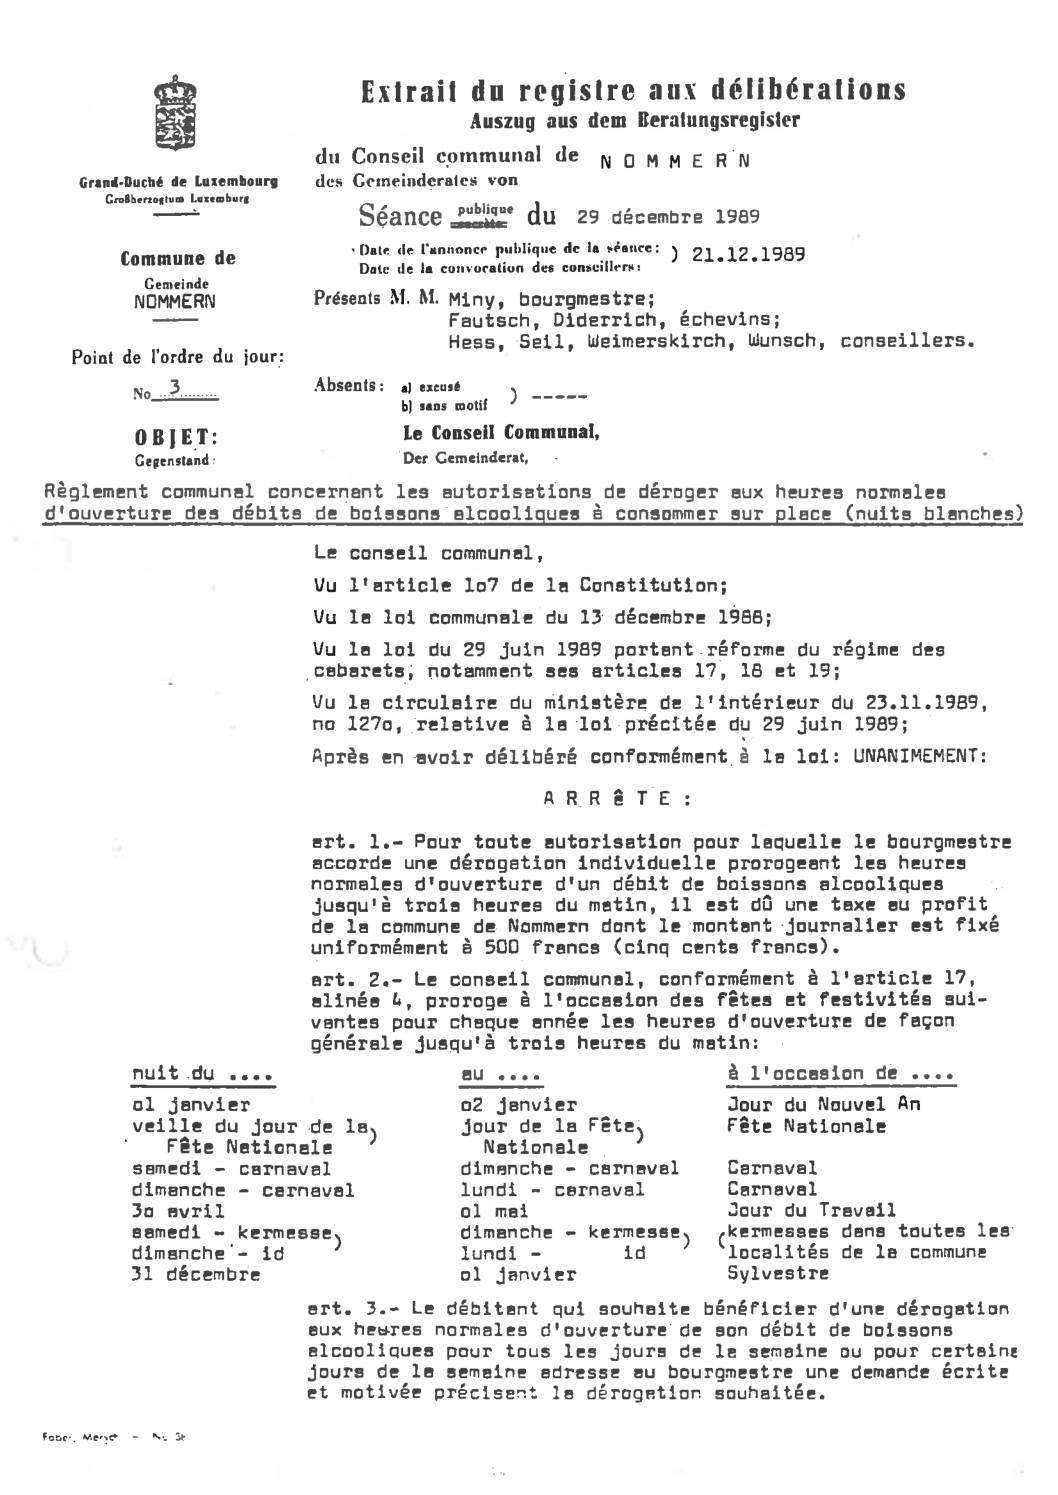 Règlement communal du 29 décembre 1989 concernant les nuits blanches